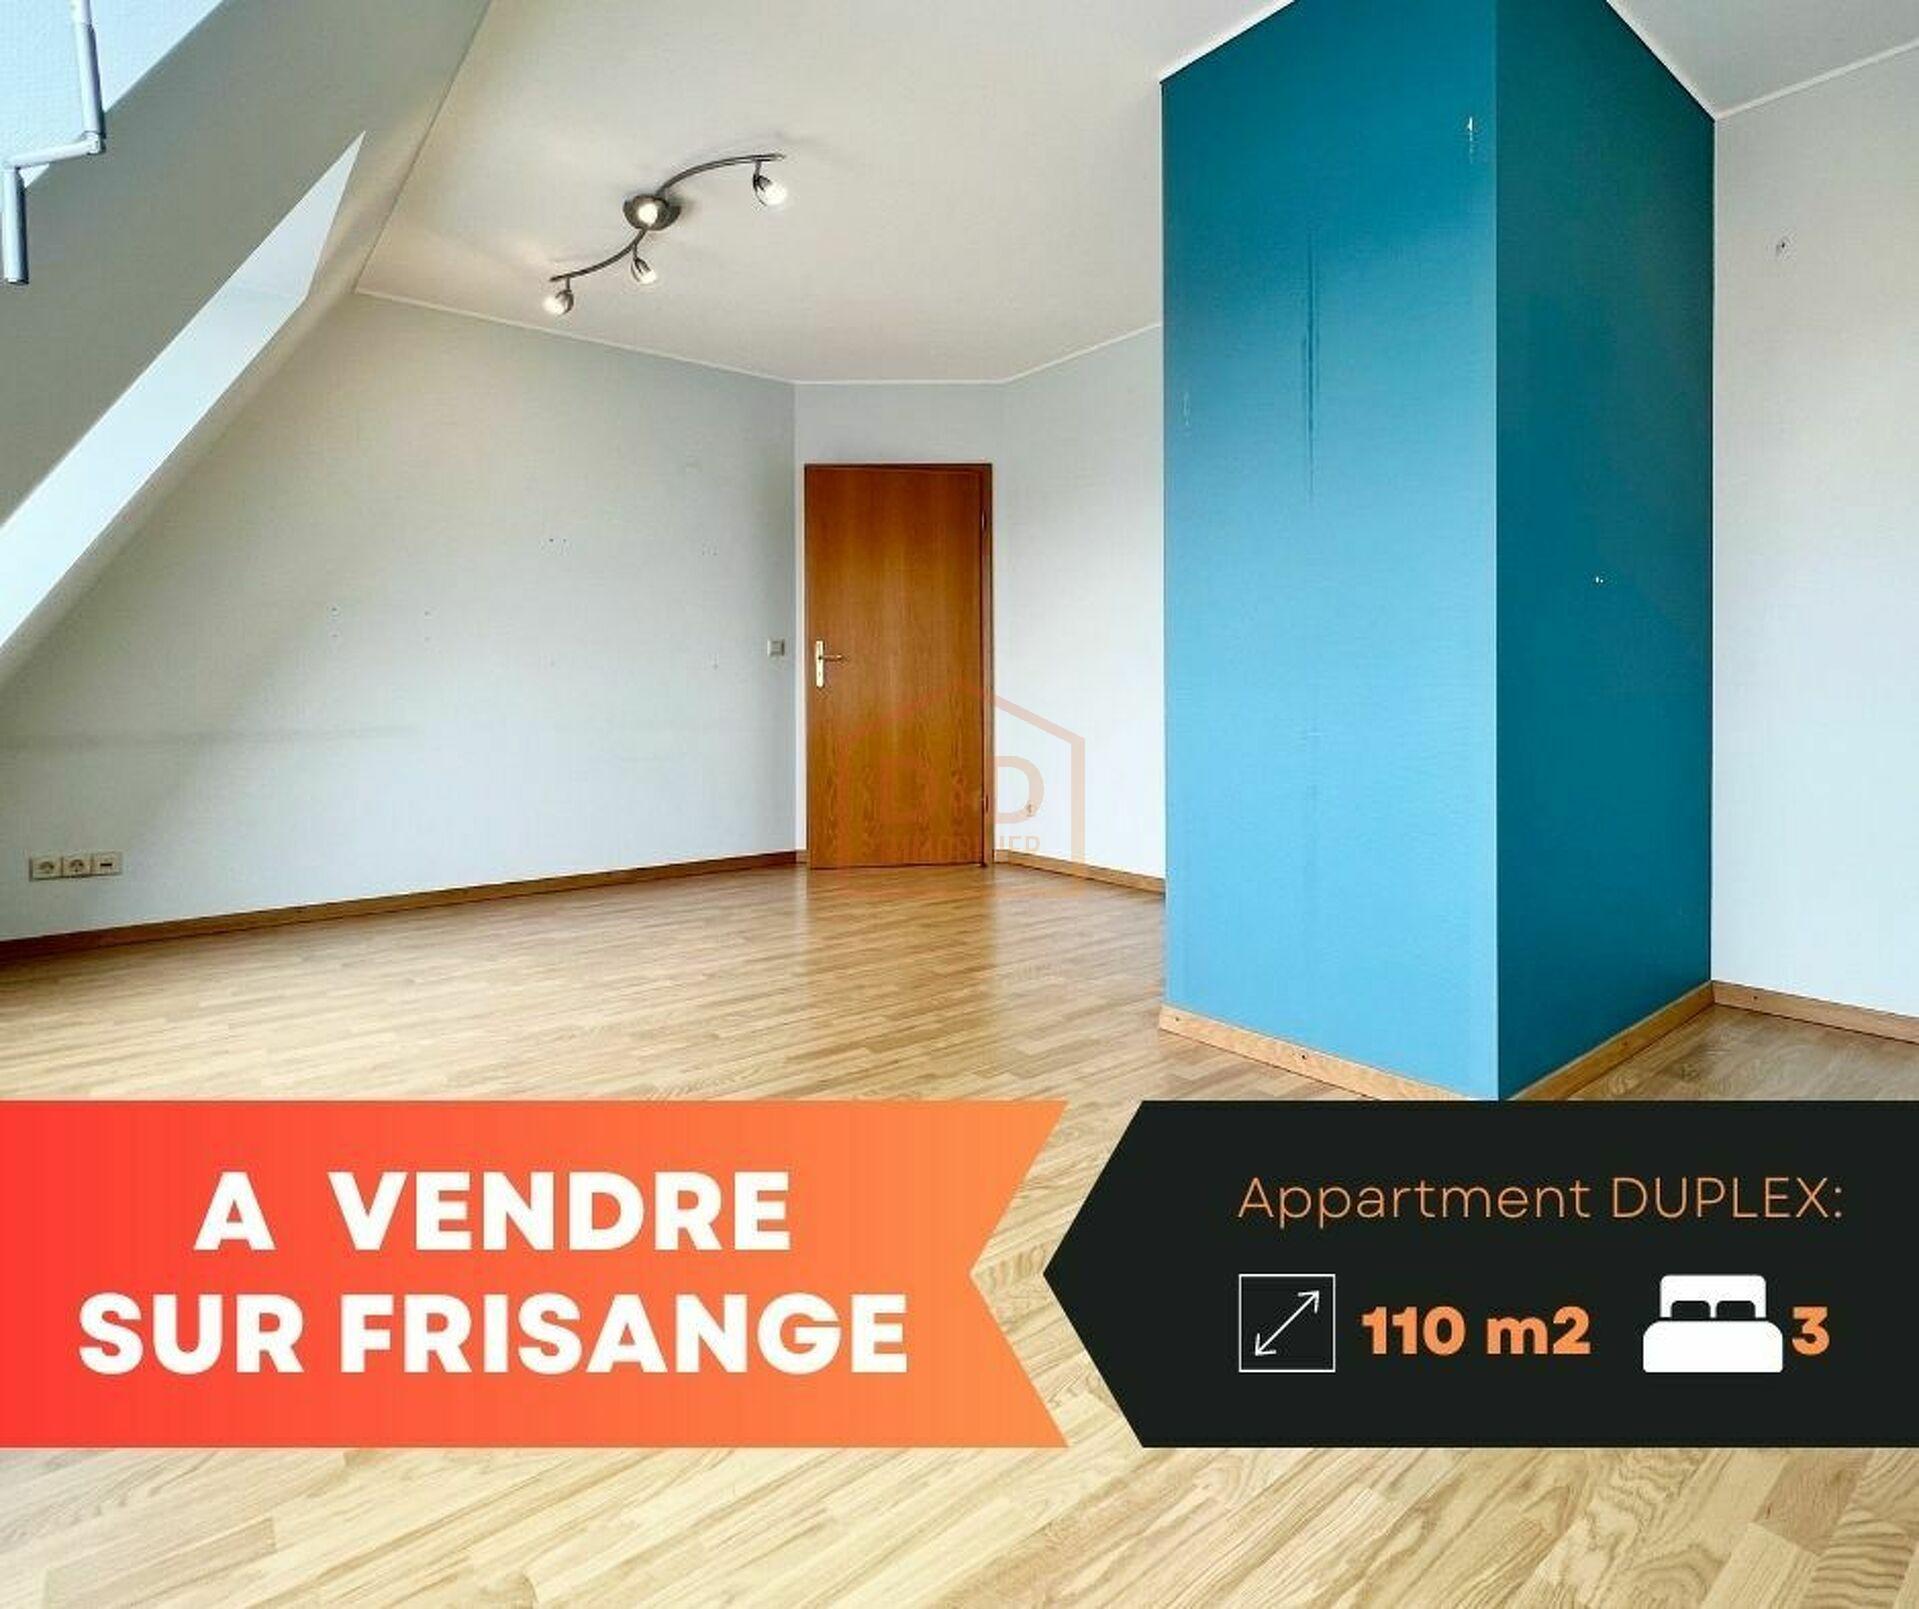 Appartement à Frisange, 110 m², 3 chambres, 1 salle de bain, 1 garage, 745 000 €